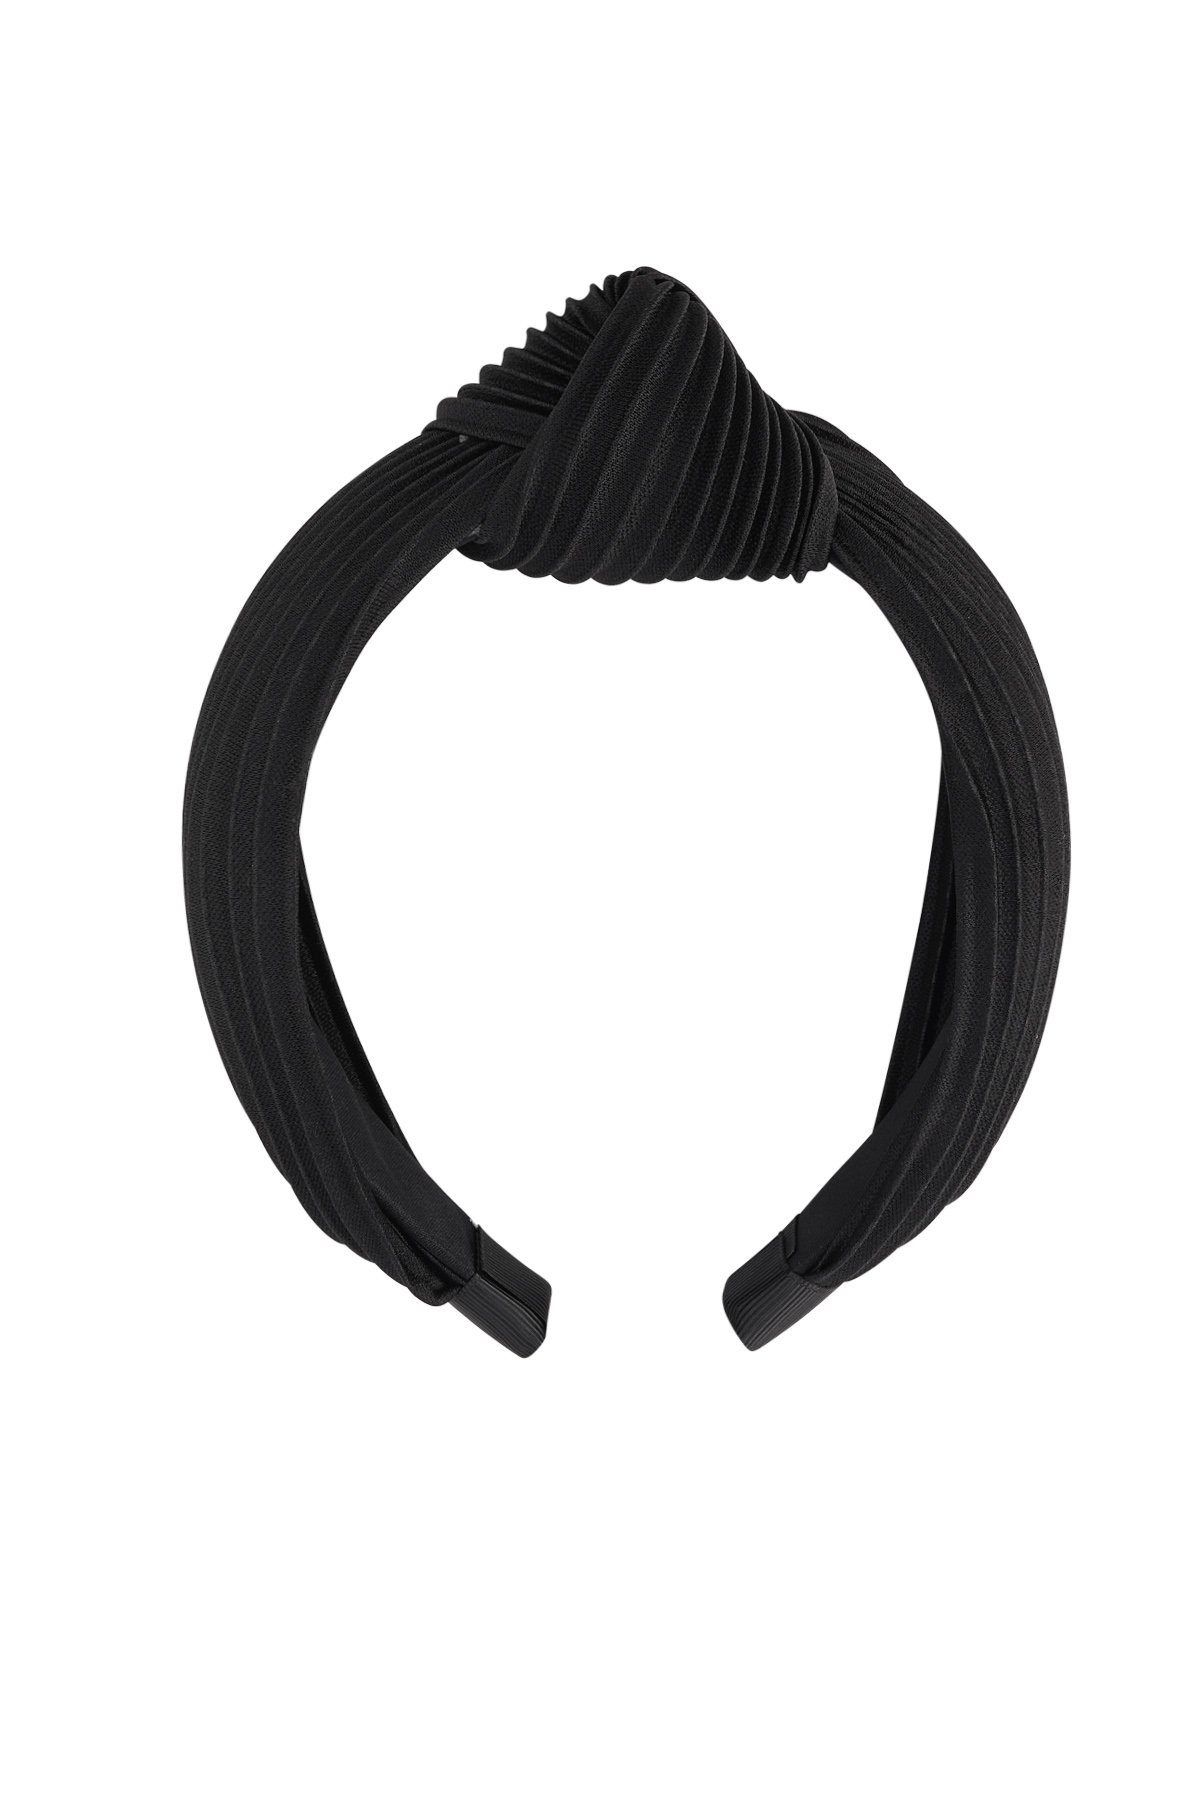 Haarband gerippt mit Knoten - schwarzer Kunststoff h5 